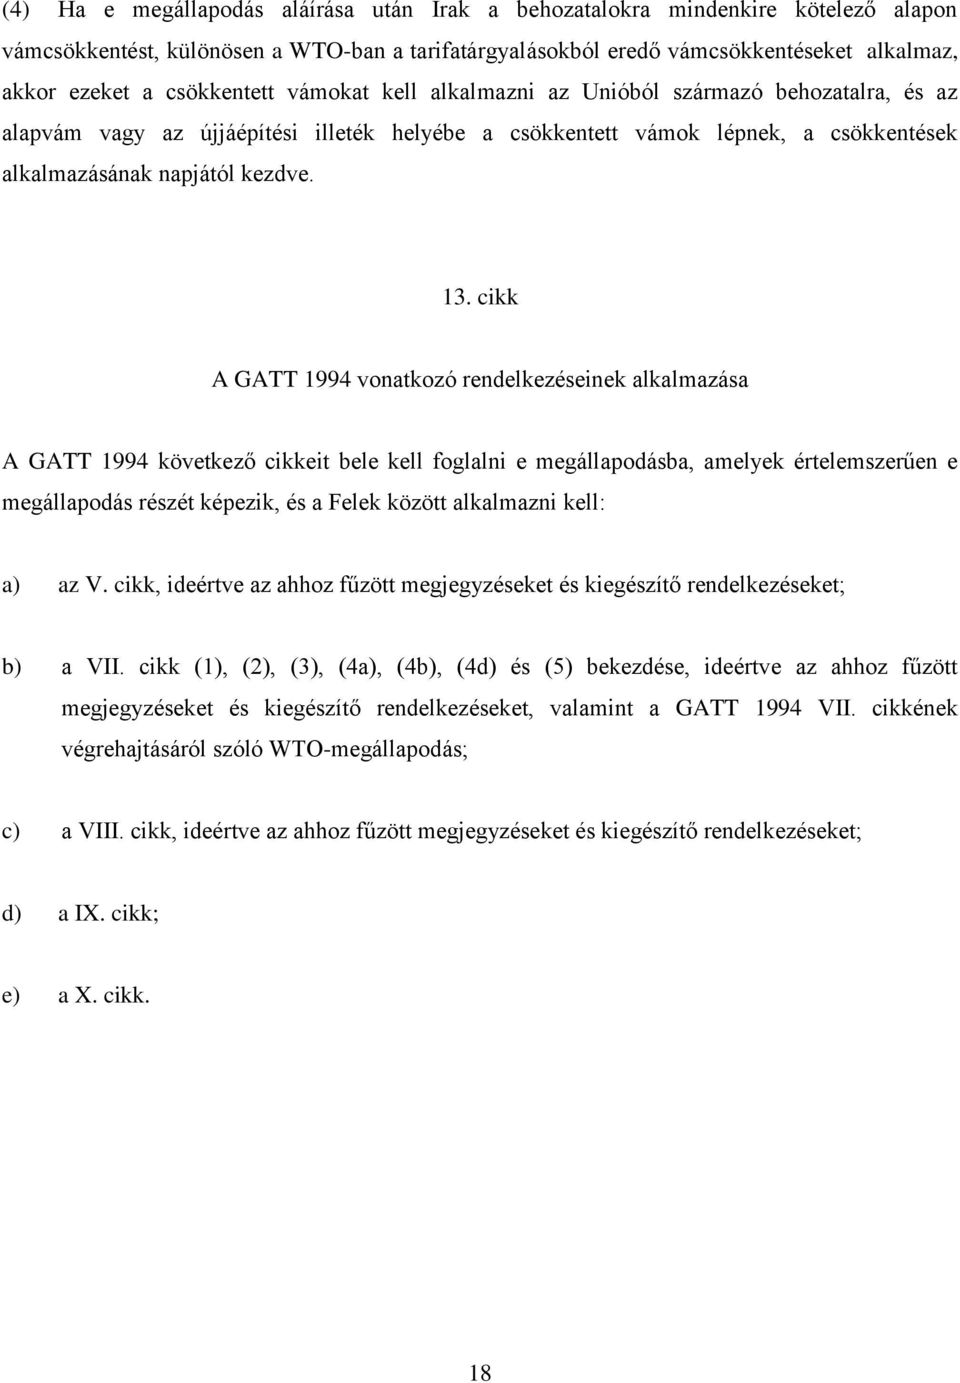 cikk A GATT 1994 vonatkozó rendelkezéseinek alkalmazása A GATT 1994 következő cikkeit bele kell foglalni e megállapodásba, amelyek értelemszerűen e megállapodás részét képezik, és a Felek között